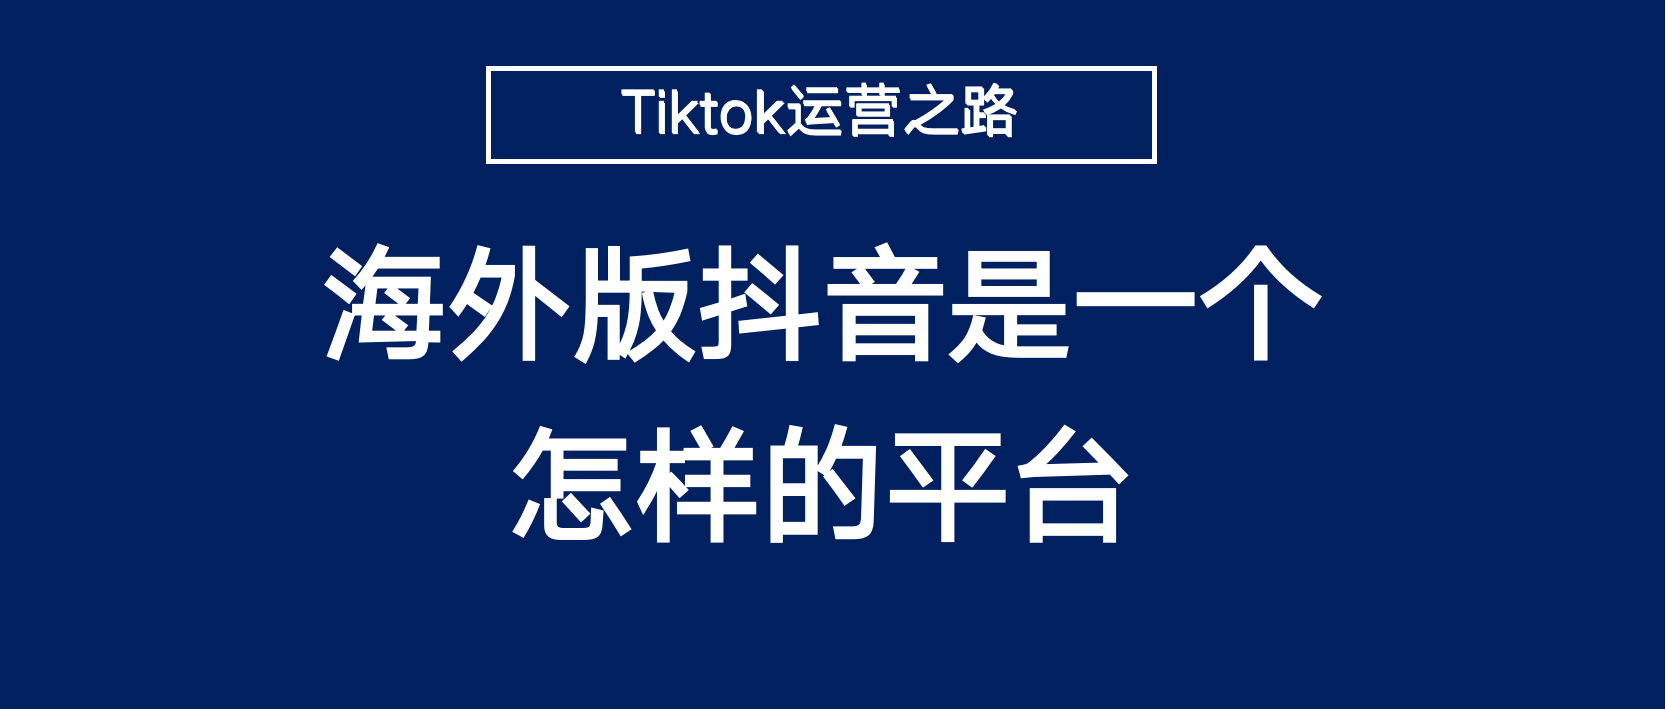 平台介绍：海外版抖音Tiktok是一个怎样的平台